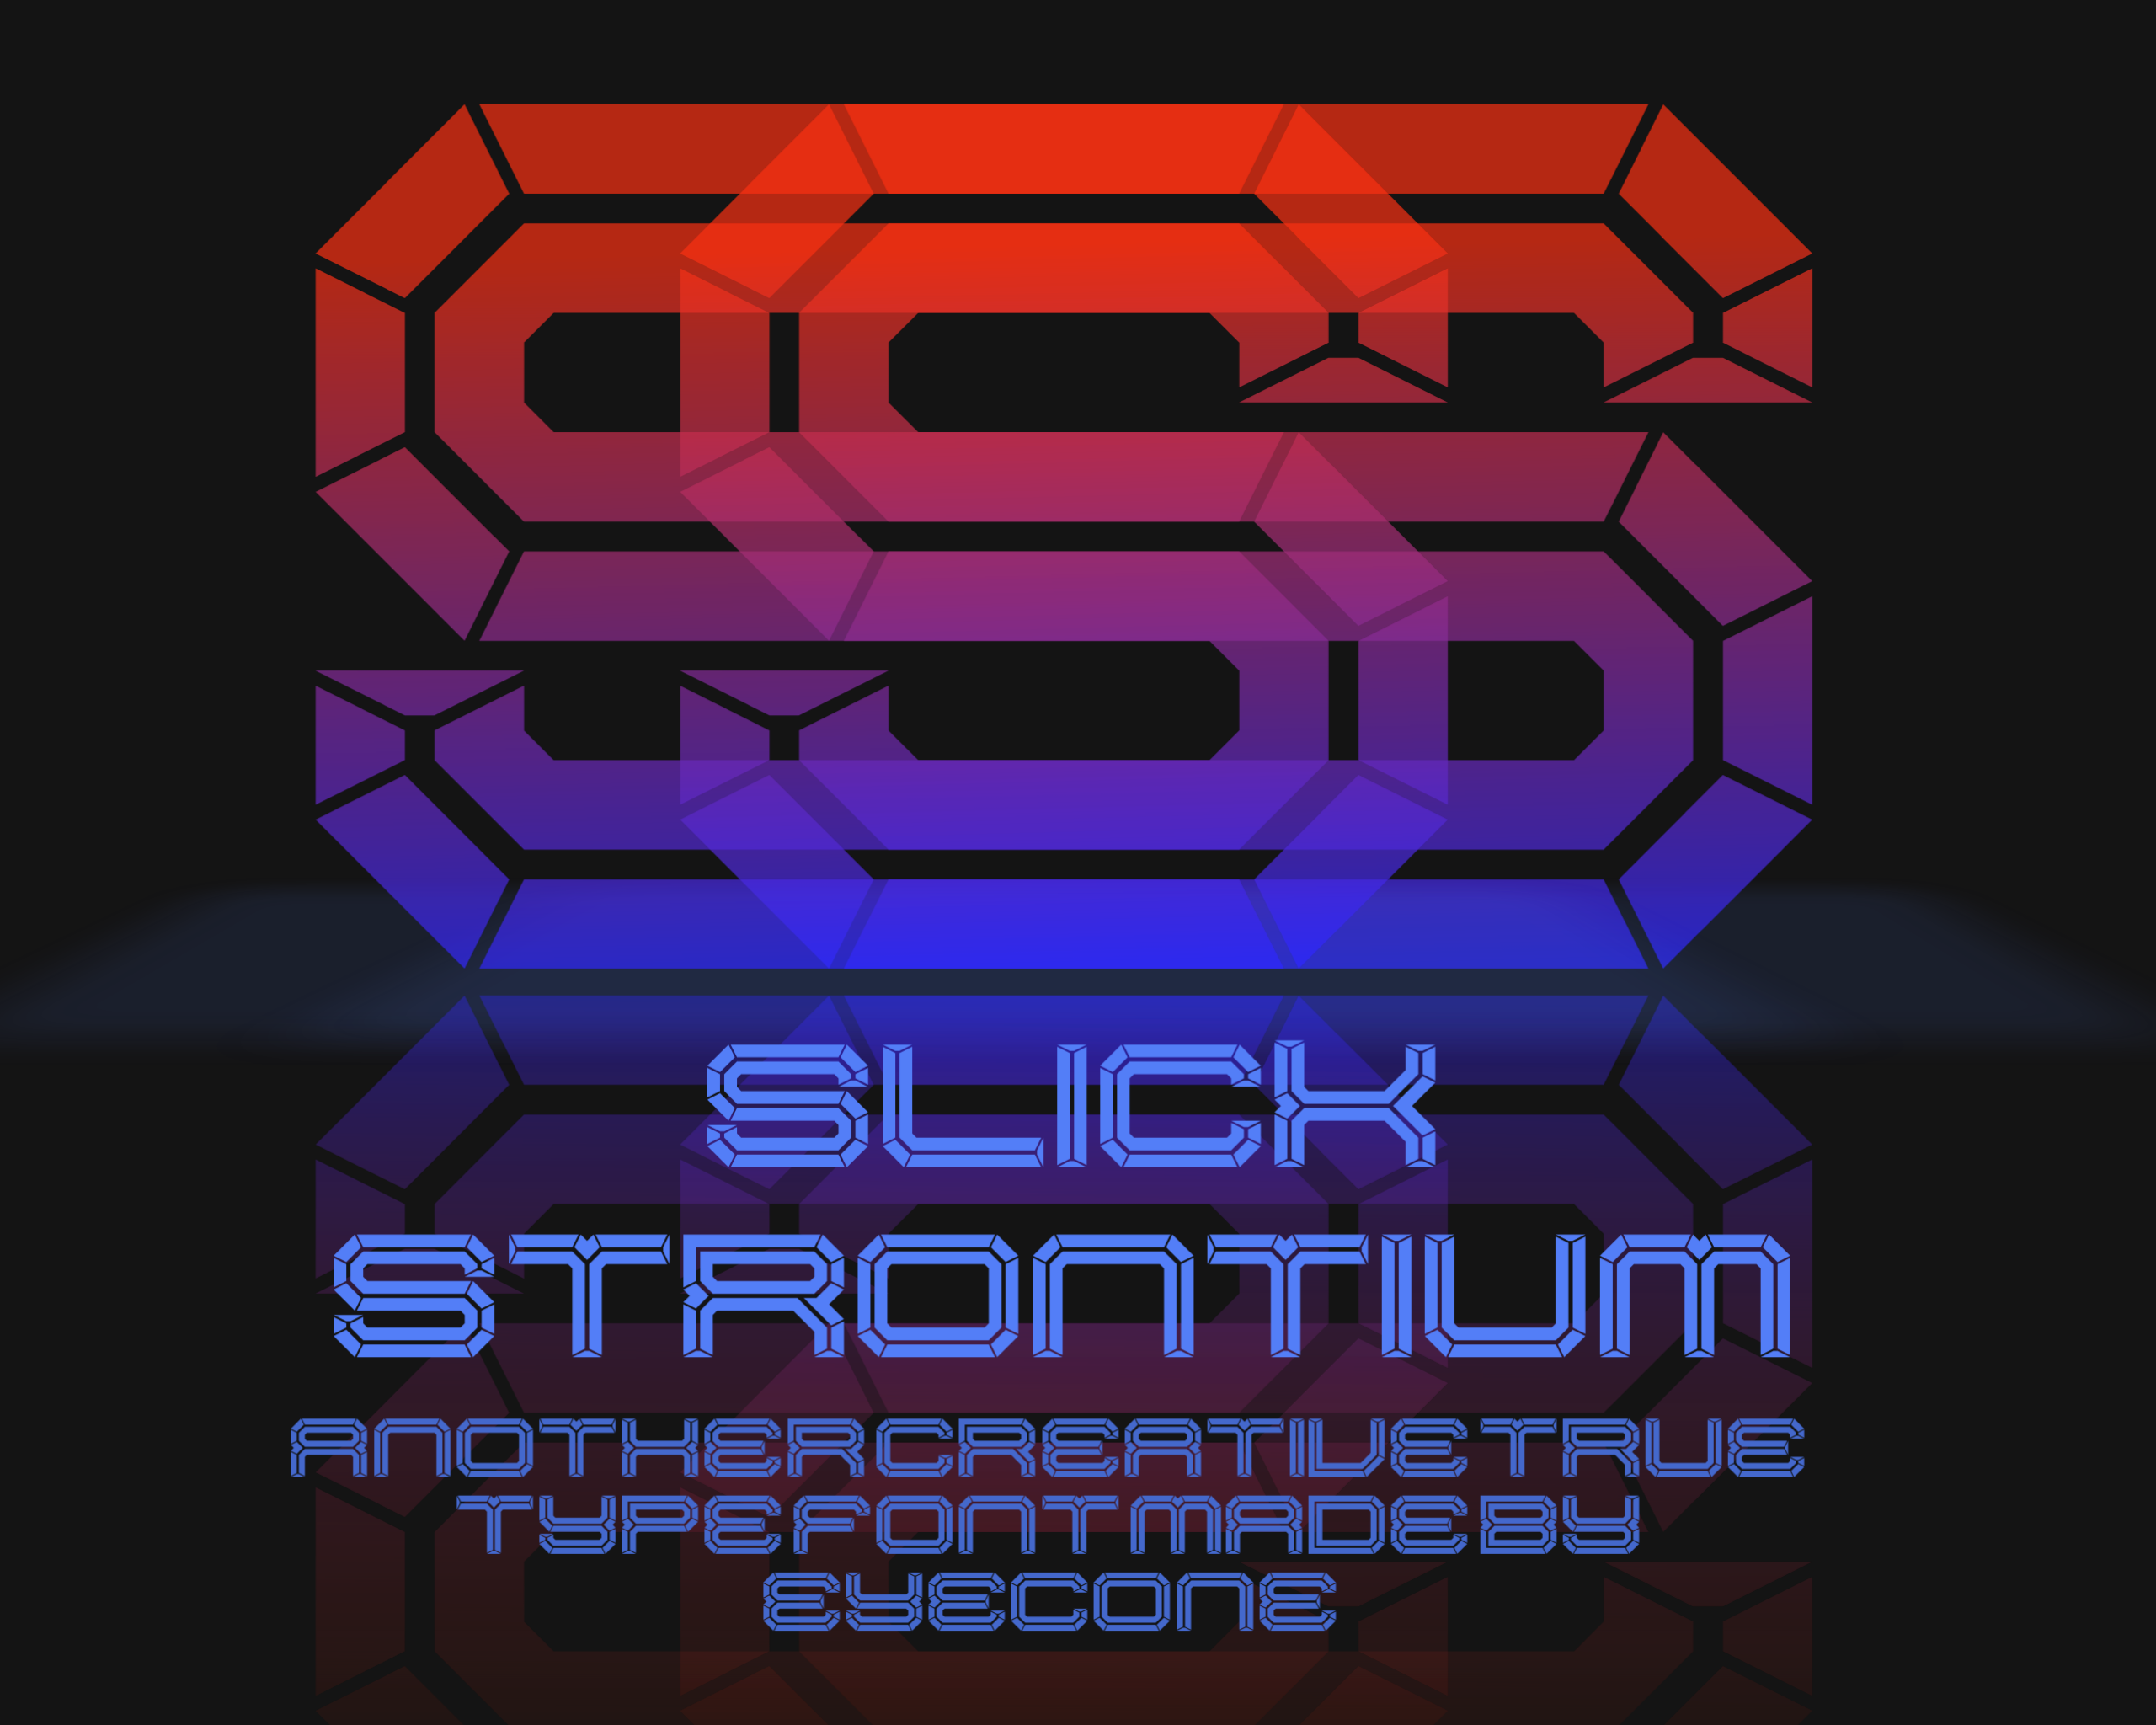 Slick Strontium